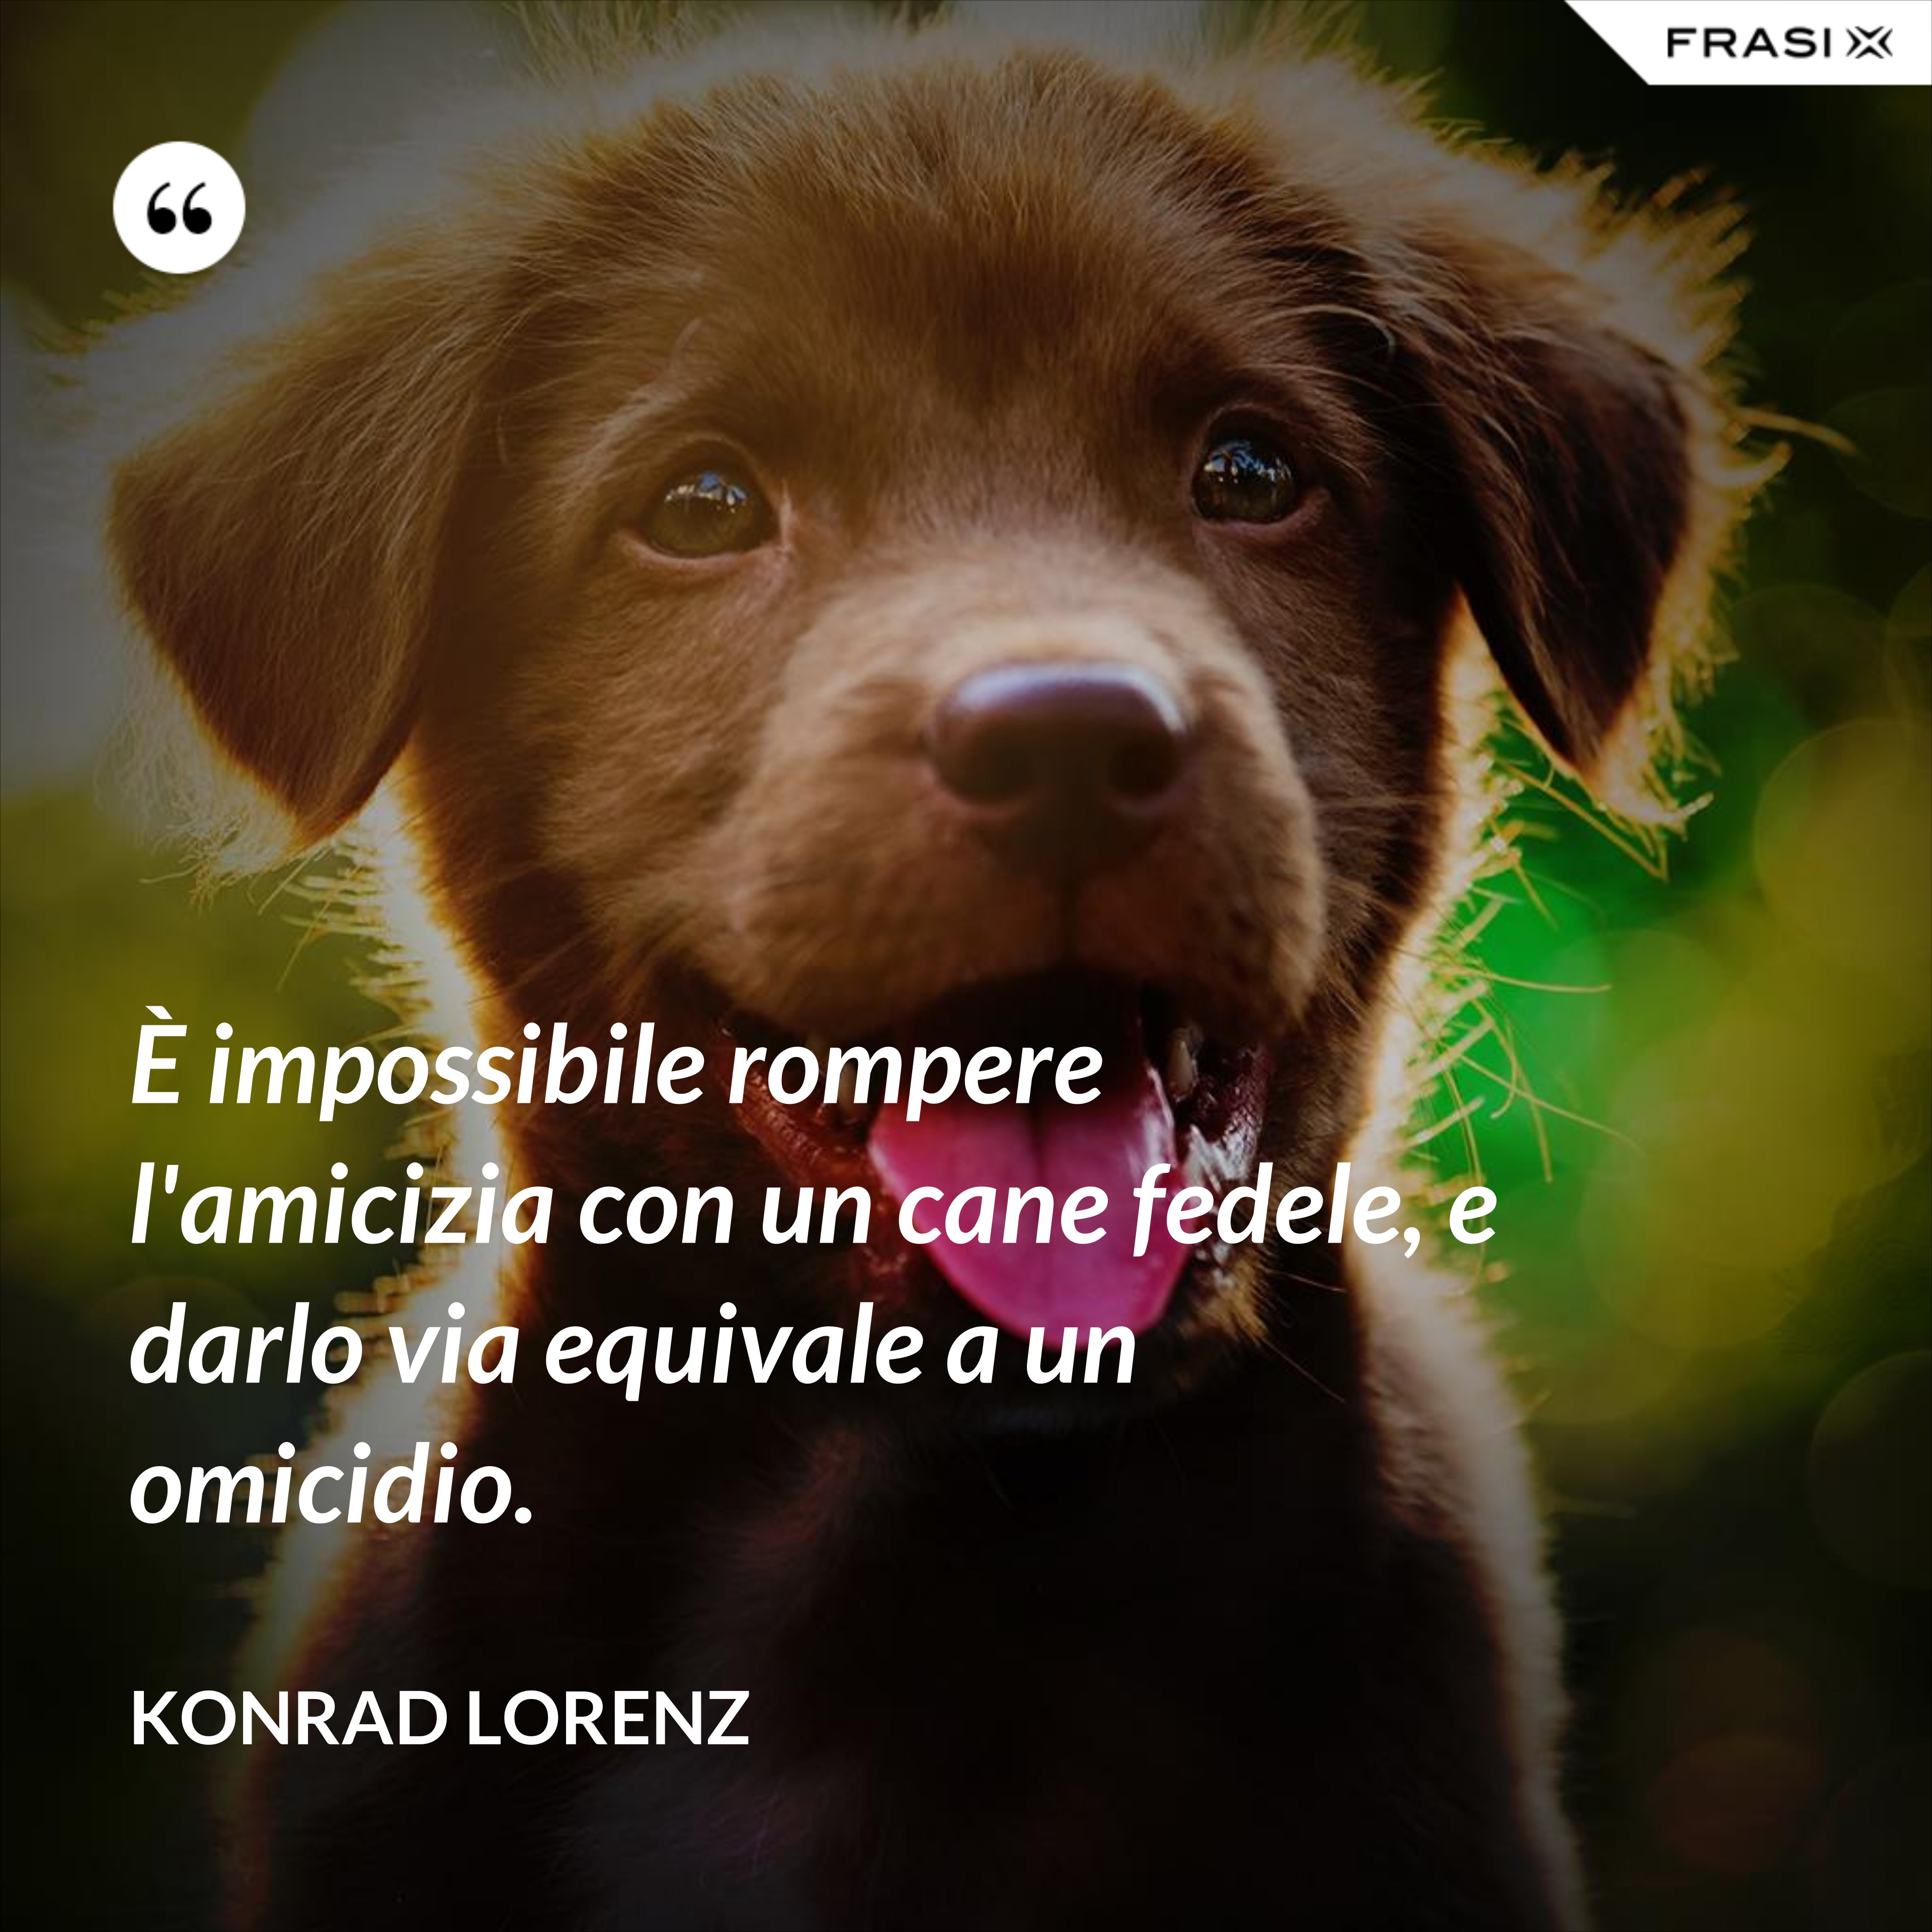 È impossibile rompere l'amicizia con un cane fedele, e darlo via equivale a un omicidio. - Konrad Lorenz